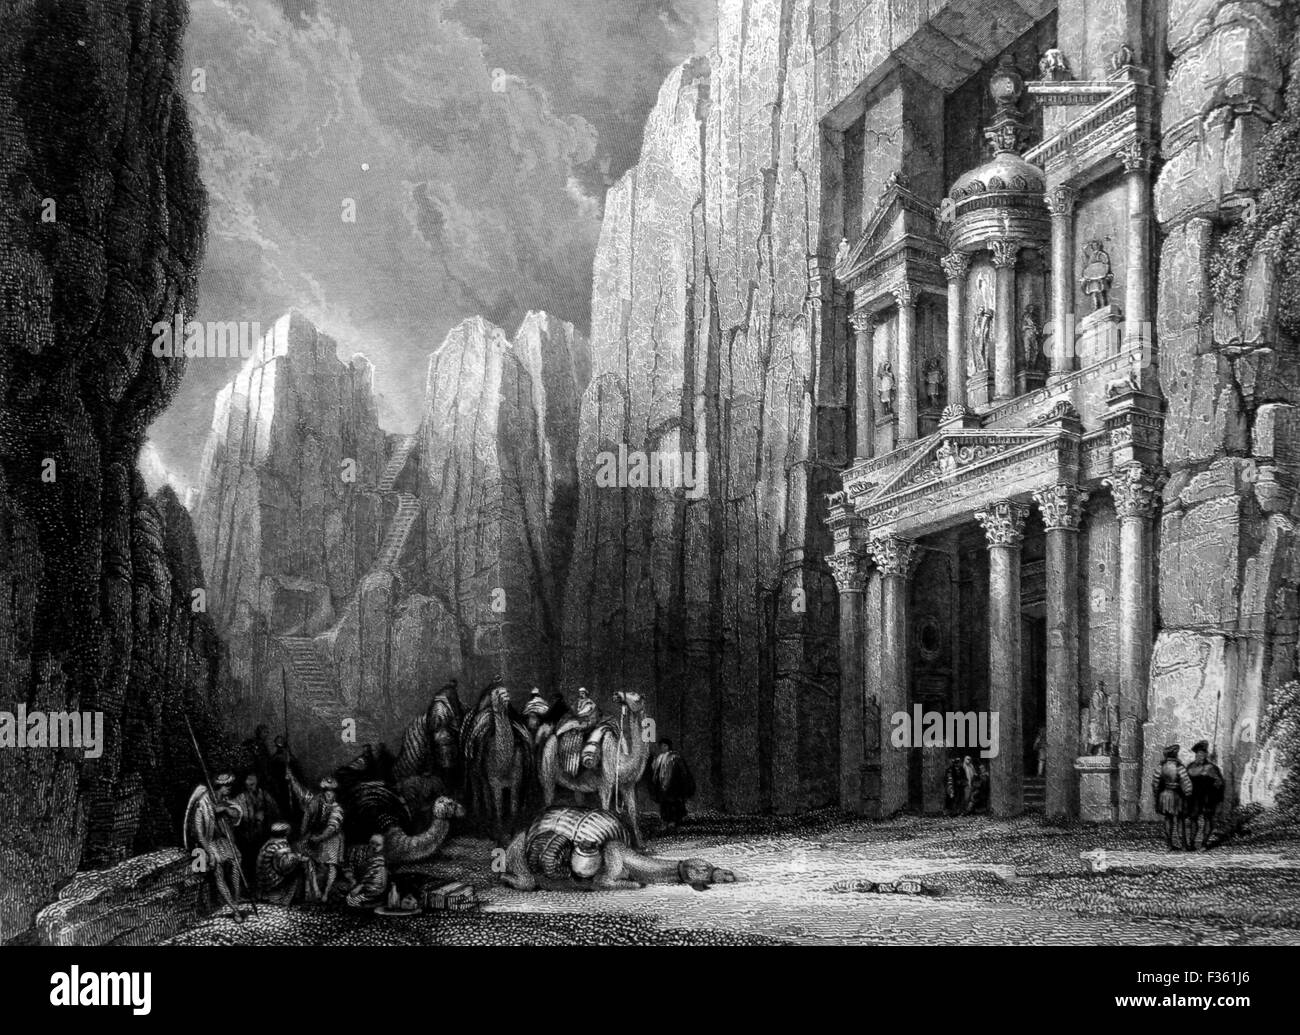 Les ruines de Selah (Petra) ; Noir et blanc Illustrations de paysages de la Bible Banque D'Images